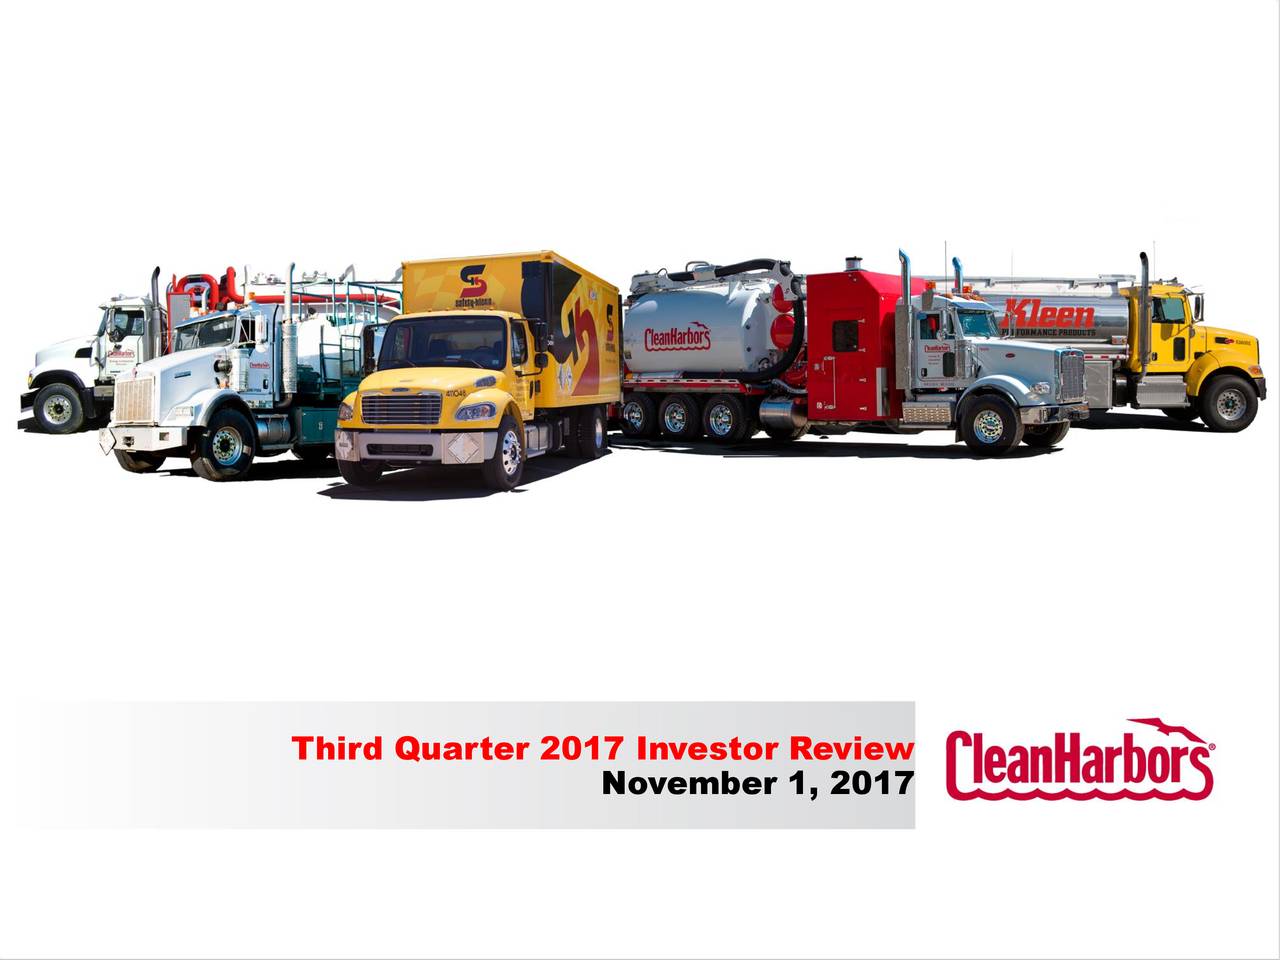 Third Quarter 2017 Investor Review